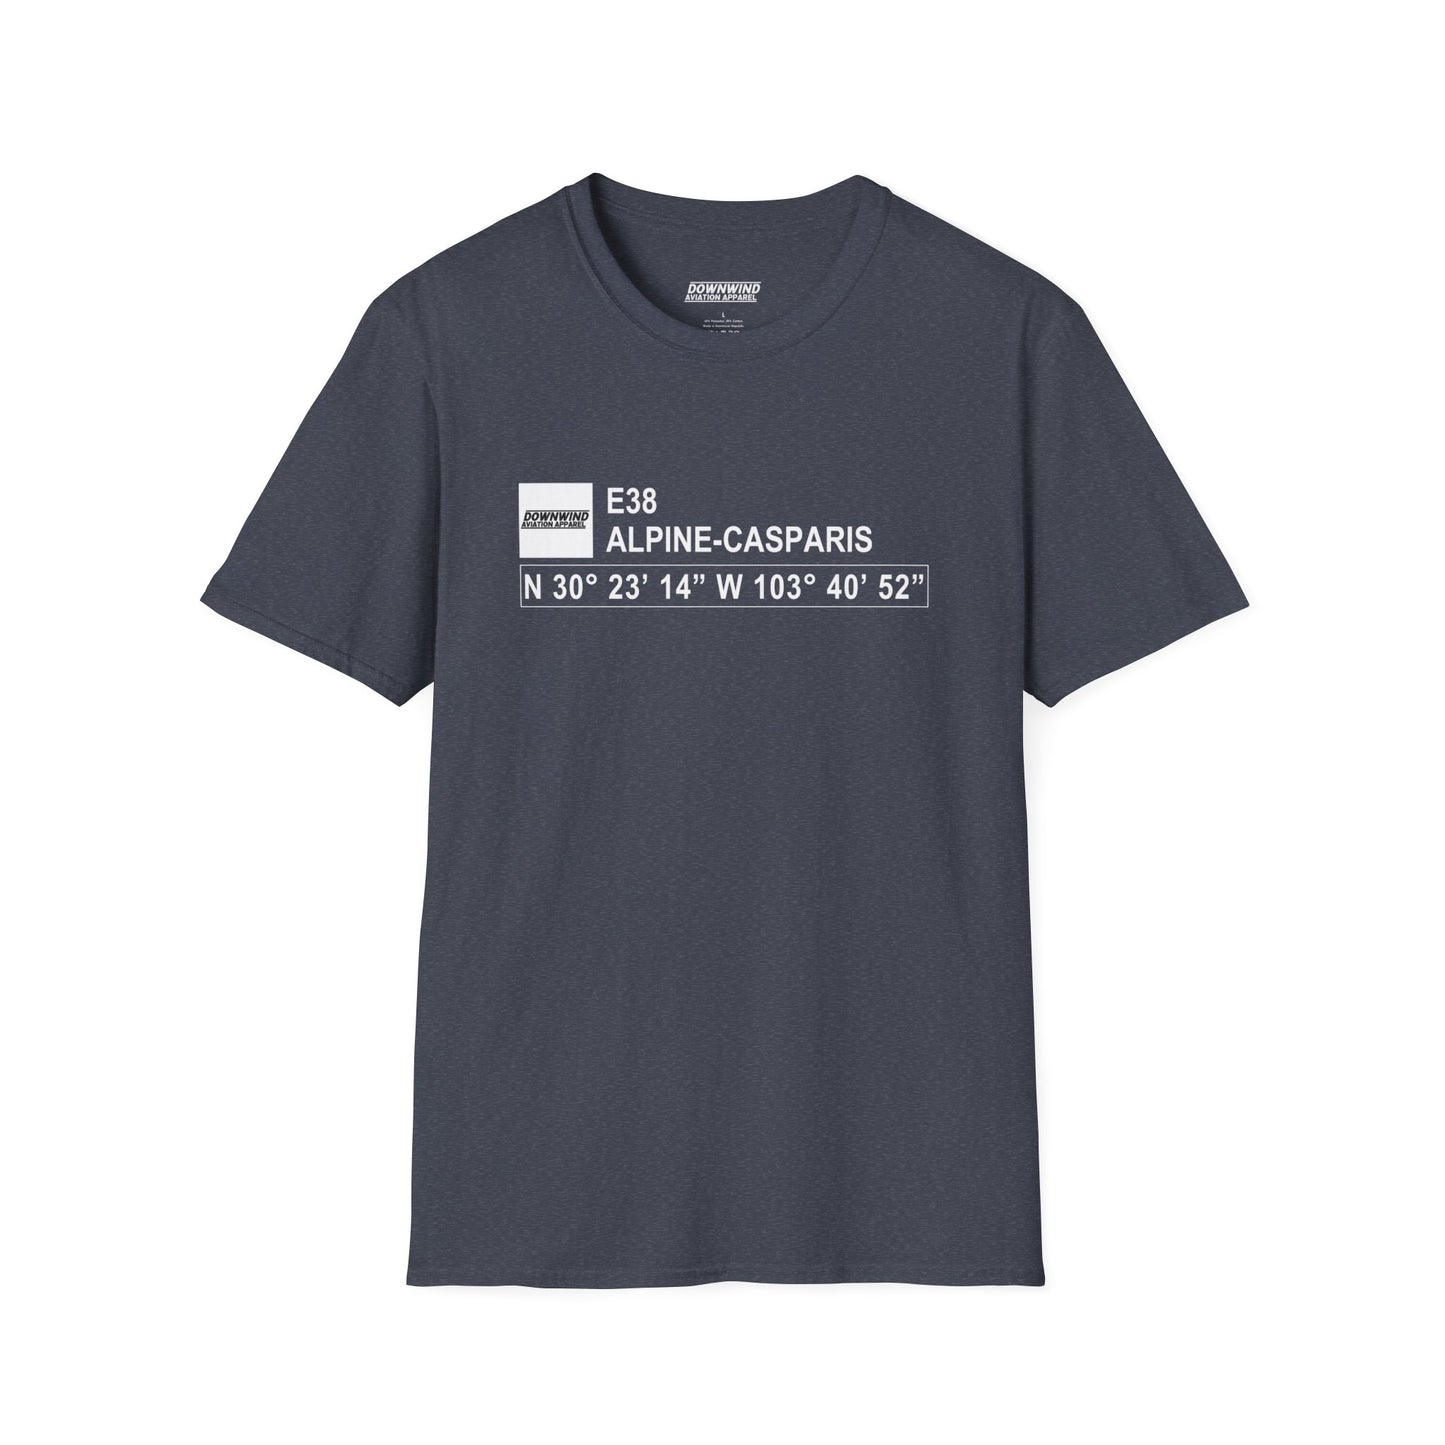 E38 / Alpine-Casparis T-Shirt